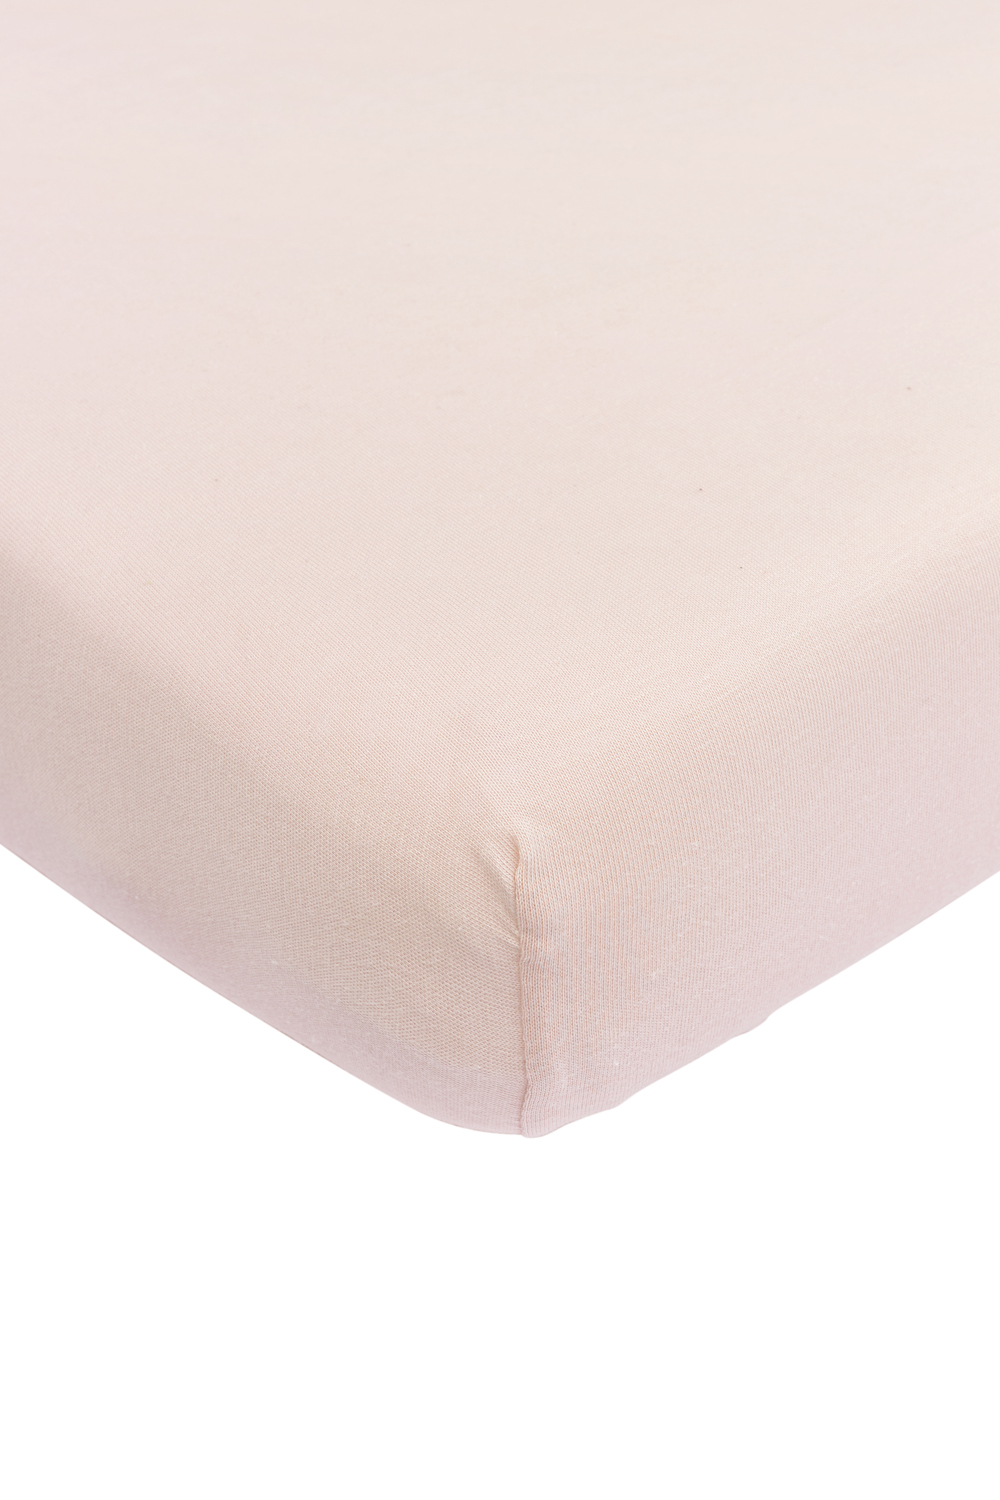 Spannbettlaken Kinderbett Uni - soft pink - 60x120cm